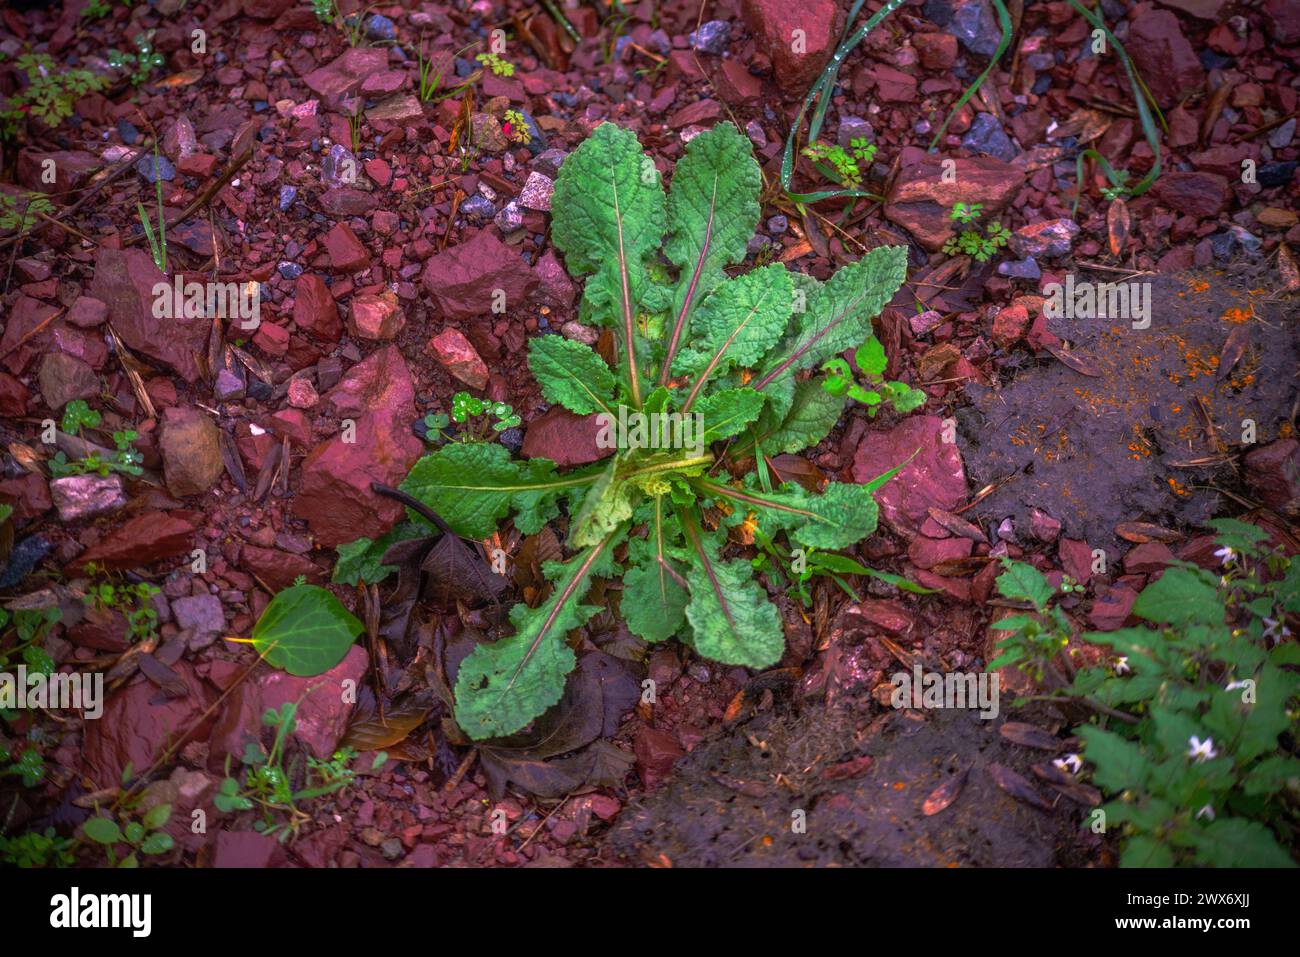 Une herbe verte éclatante émerge gracieusement de la riche boue rouge, symbolisant le mélange harmonieux des tons terreux de la nature et de la croissance organique. Banque D'Images